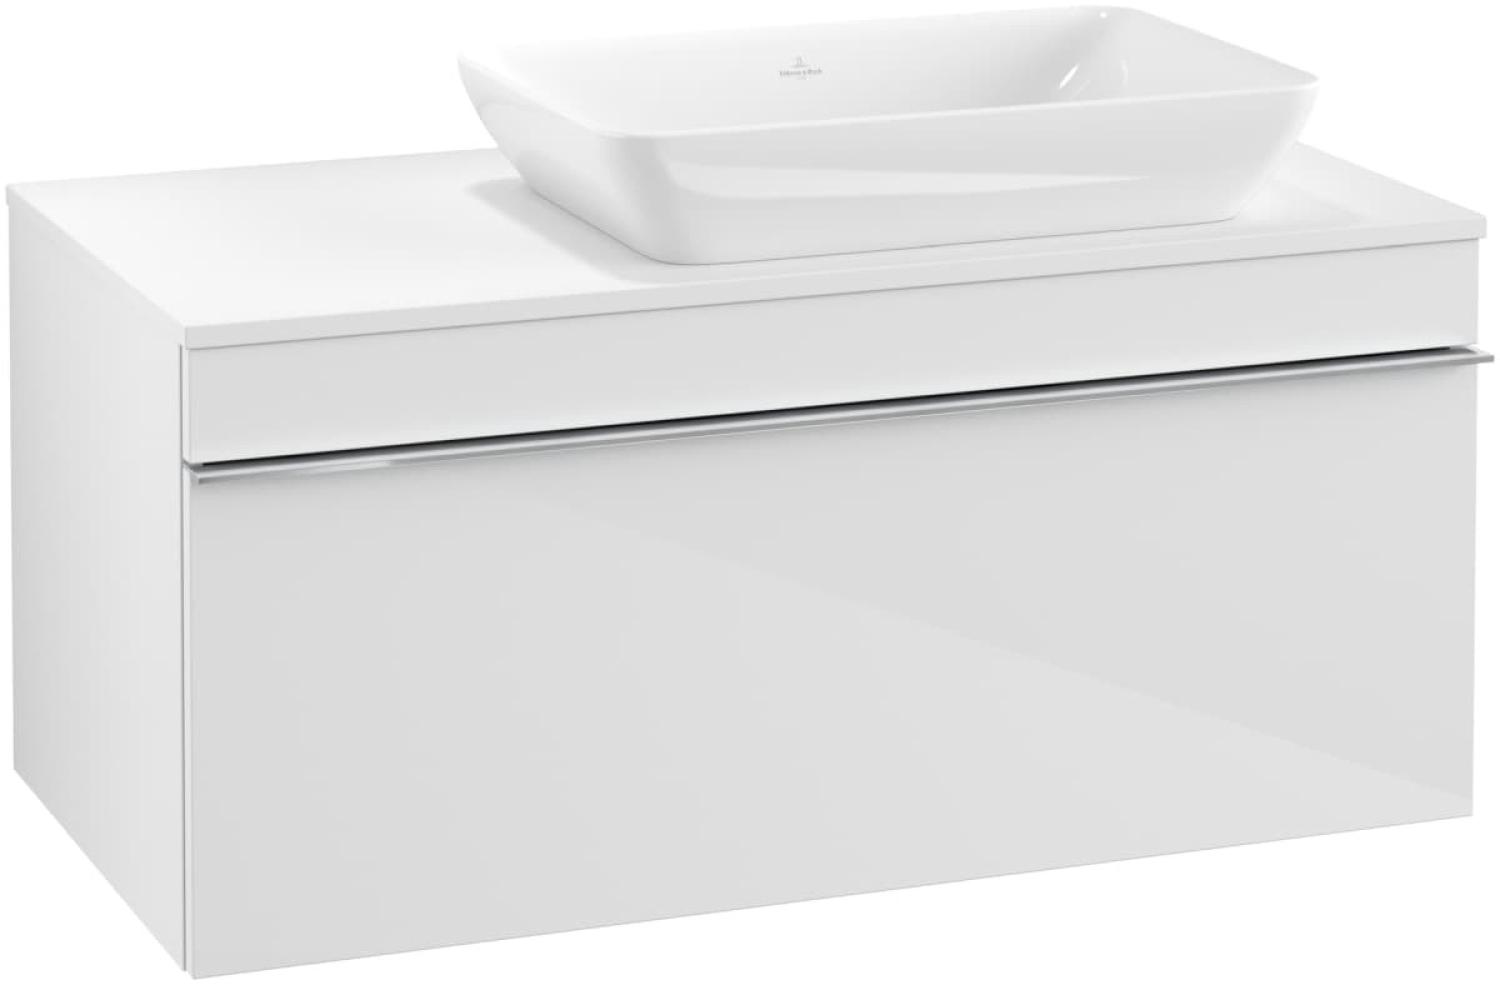 Villeroy & Boch VENTICELLO Waschtischunterschrank 95 cm breit, Weiß, Griff Chrom, für Becken rechts Bild 1